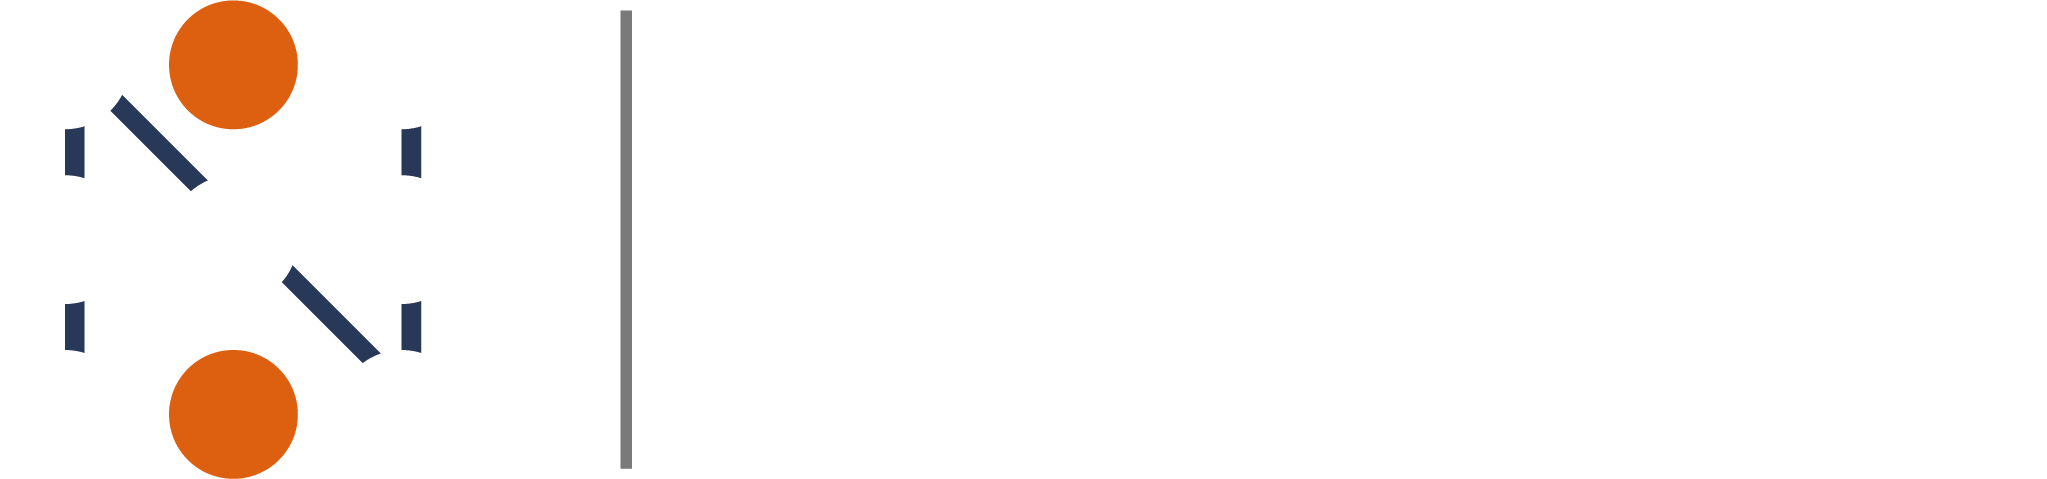 Nexa Logo Blanco